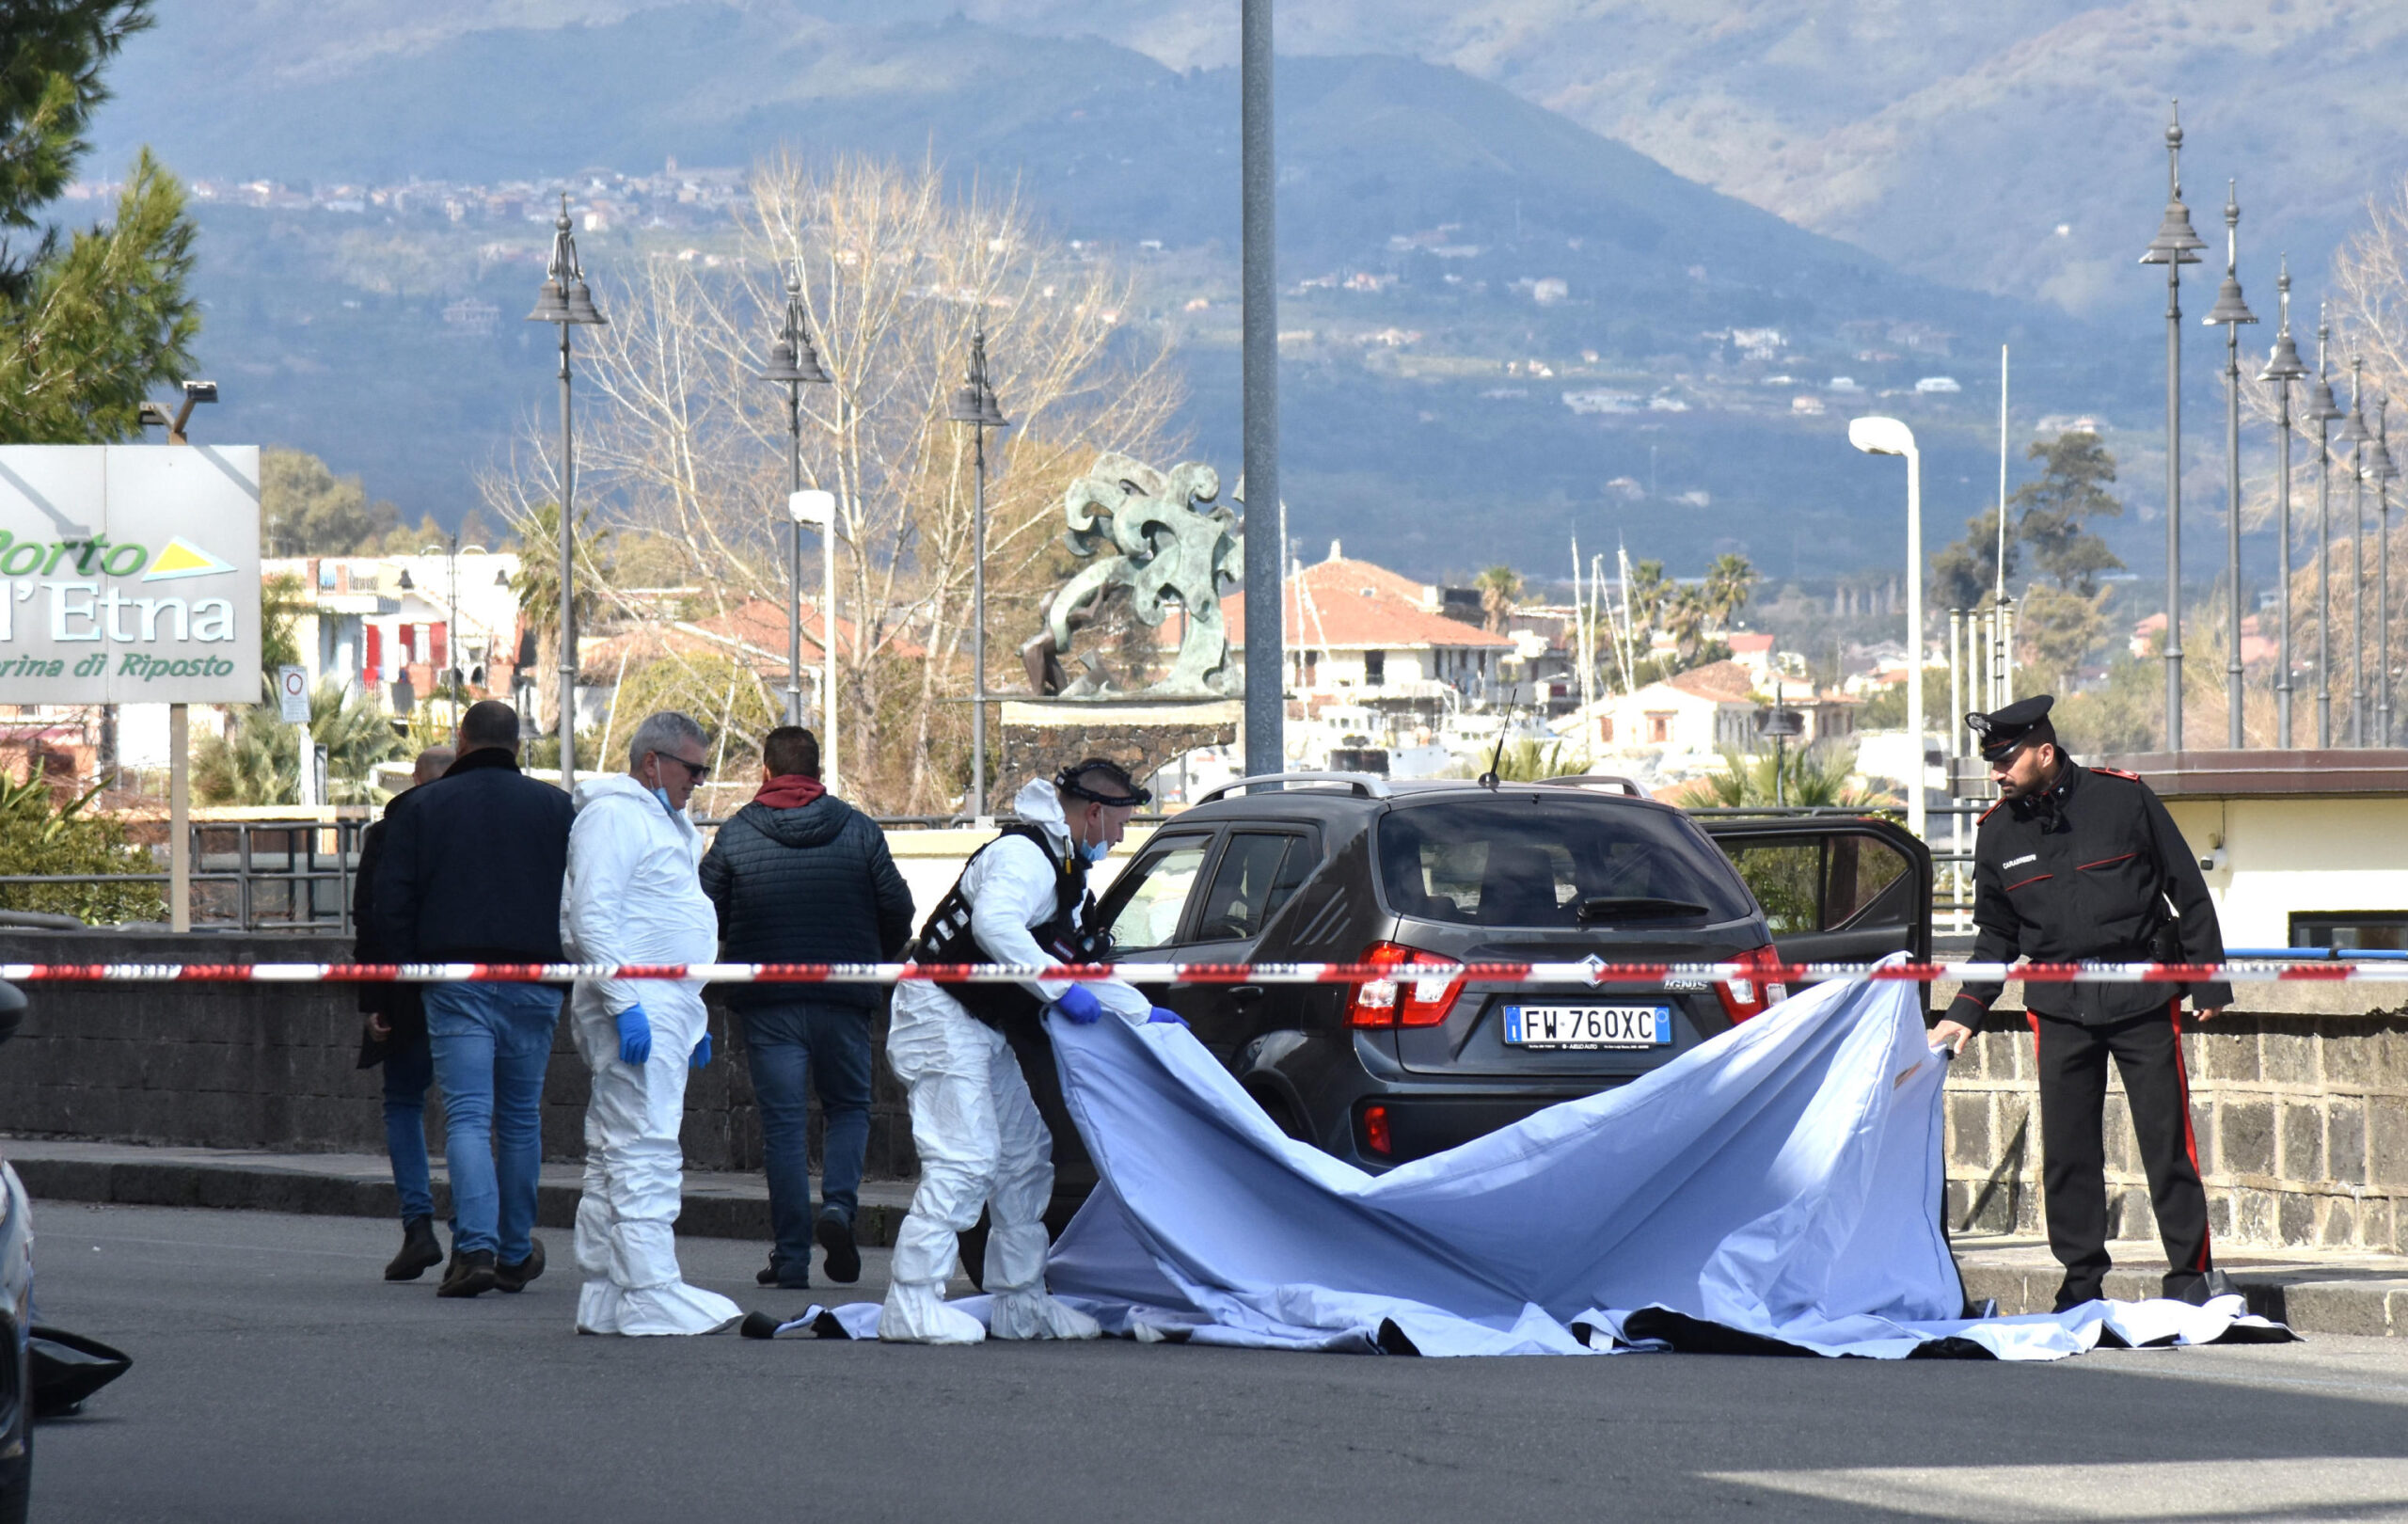 due-donne-uccise-a-catania,-le-ultime-parole-del-killer-prima-di-suicidarsi-davanti-ai-carabinieri:-cosa-sappiamo